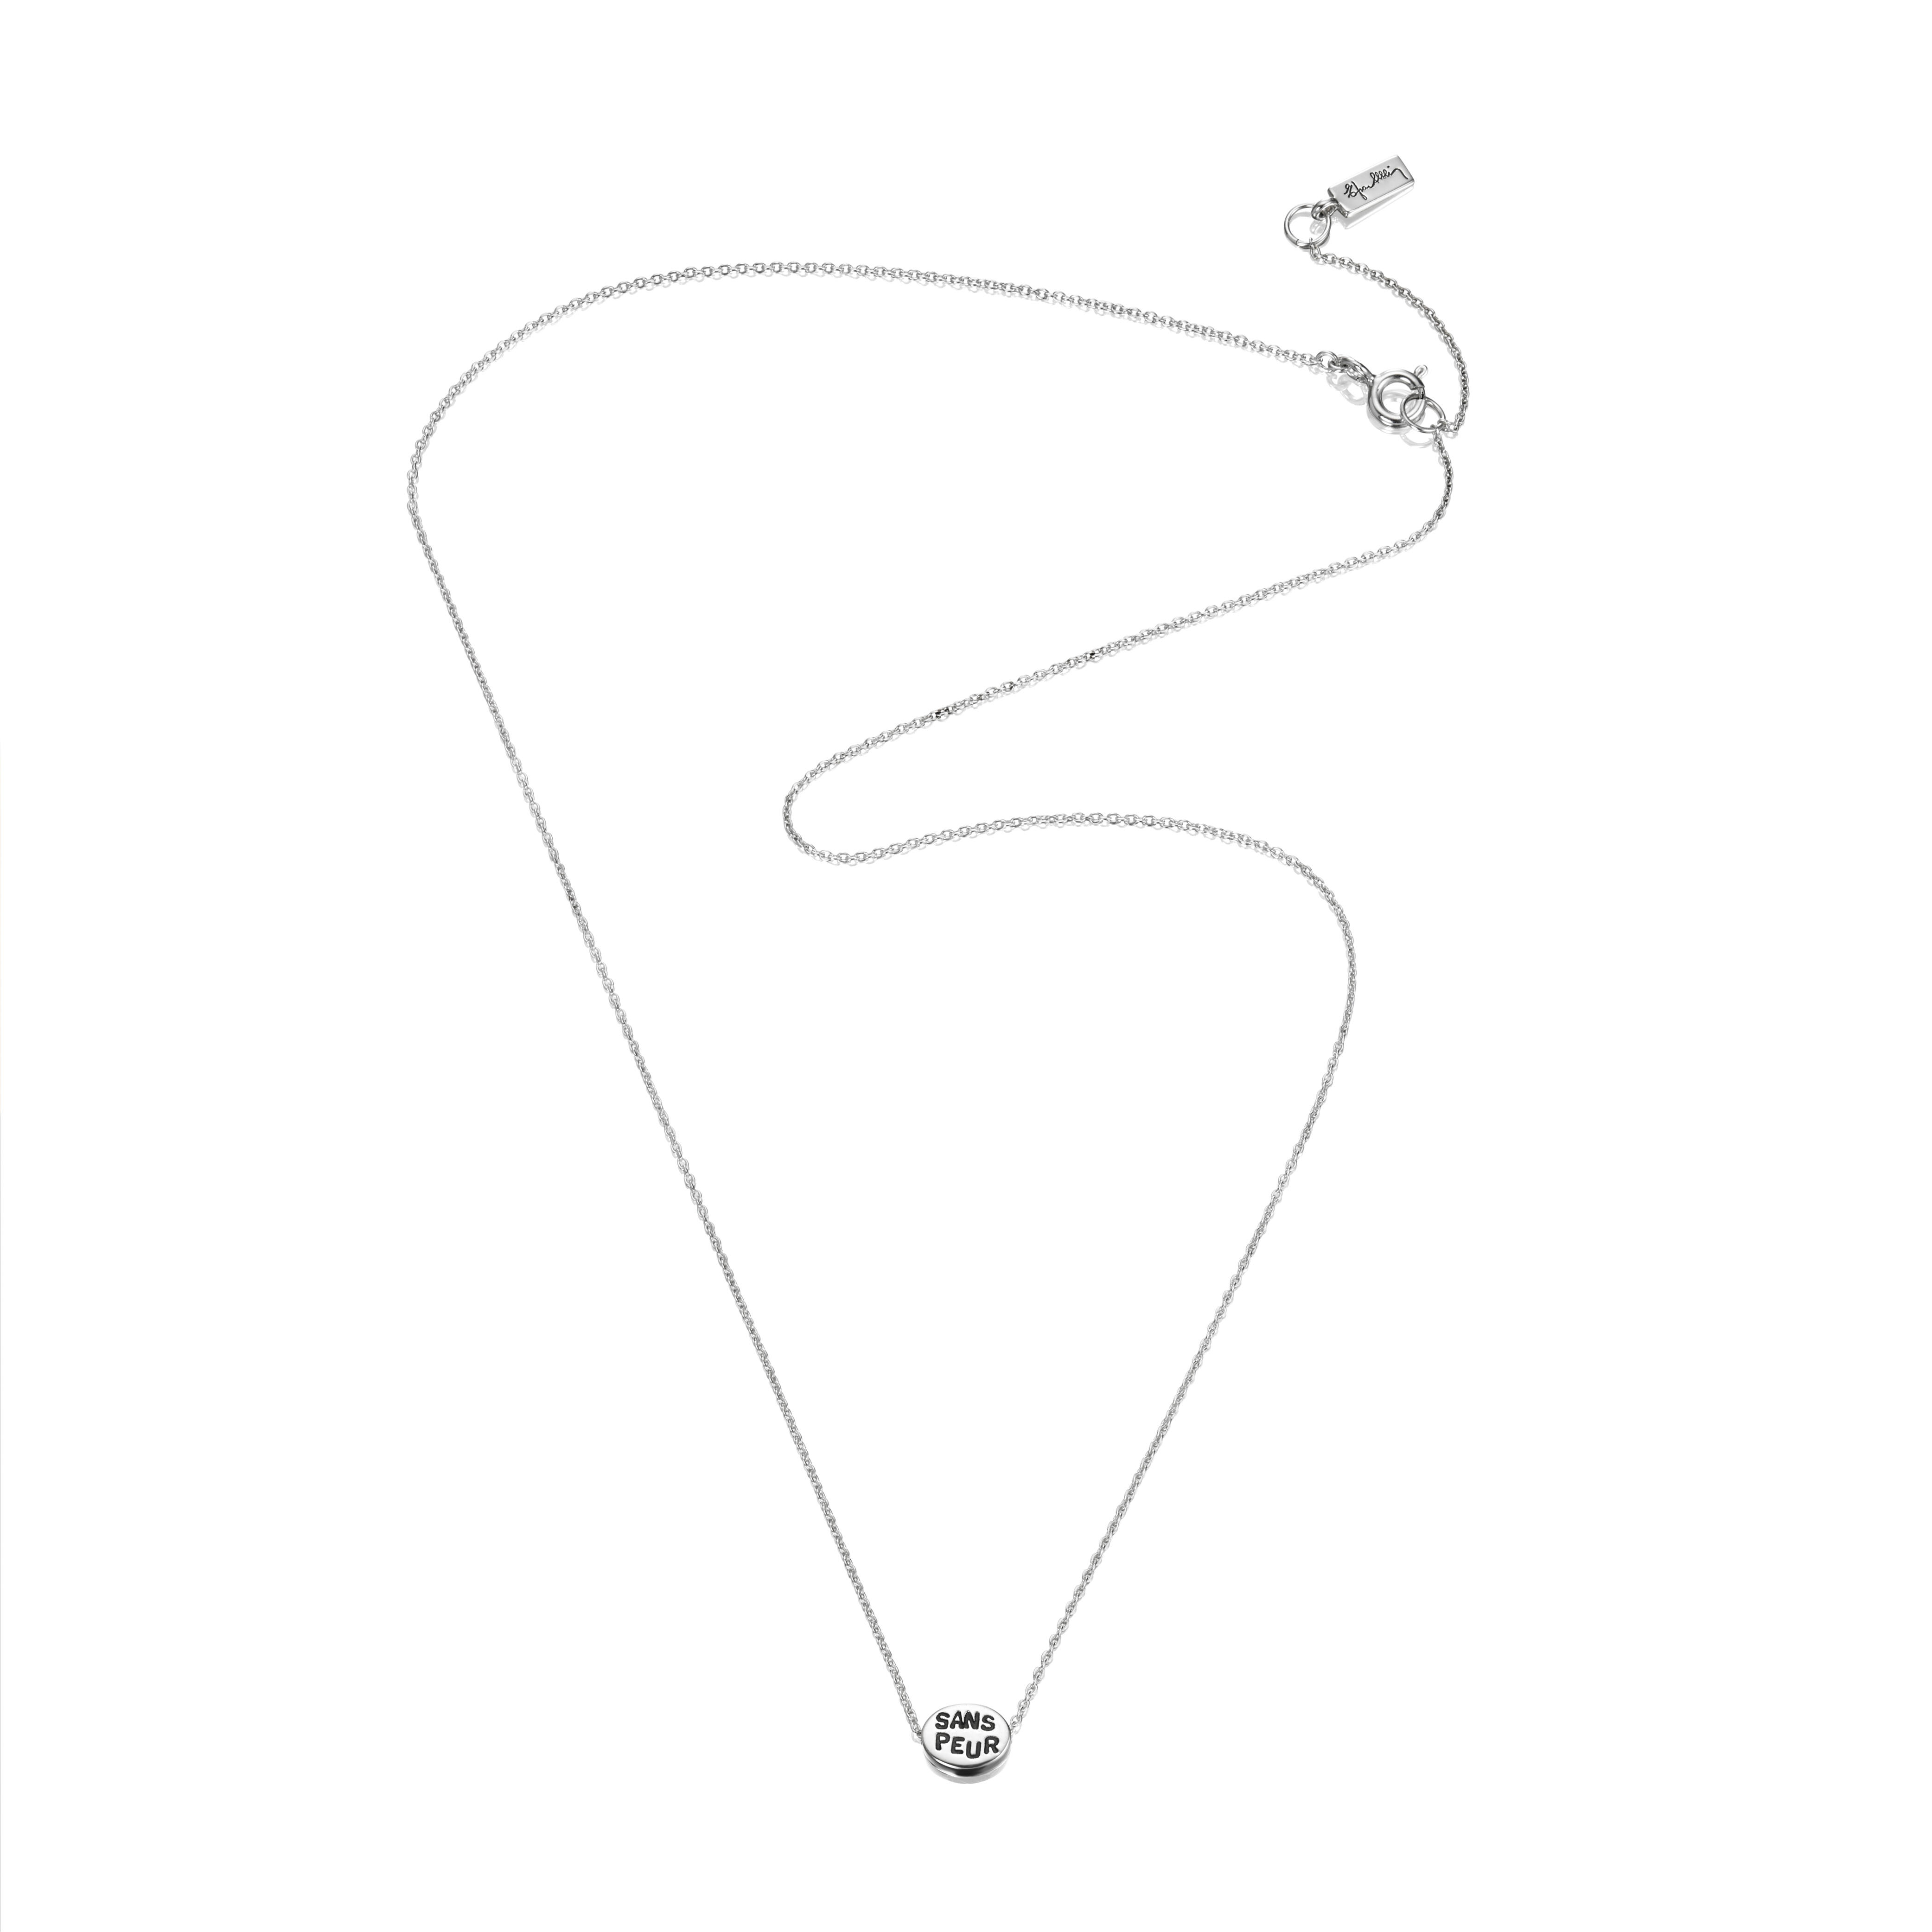 Necklace Length Diagram Mini Me Sans Peur Necklace